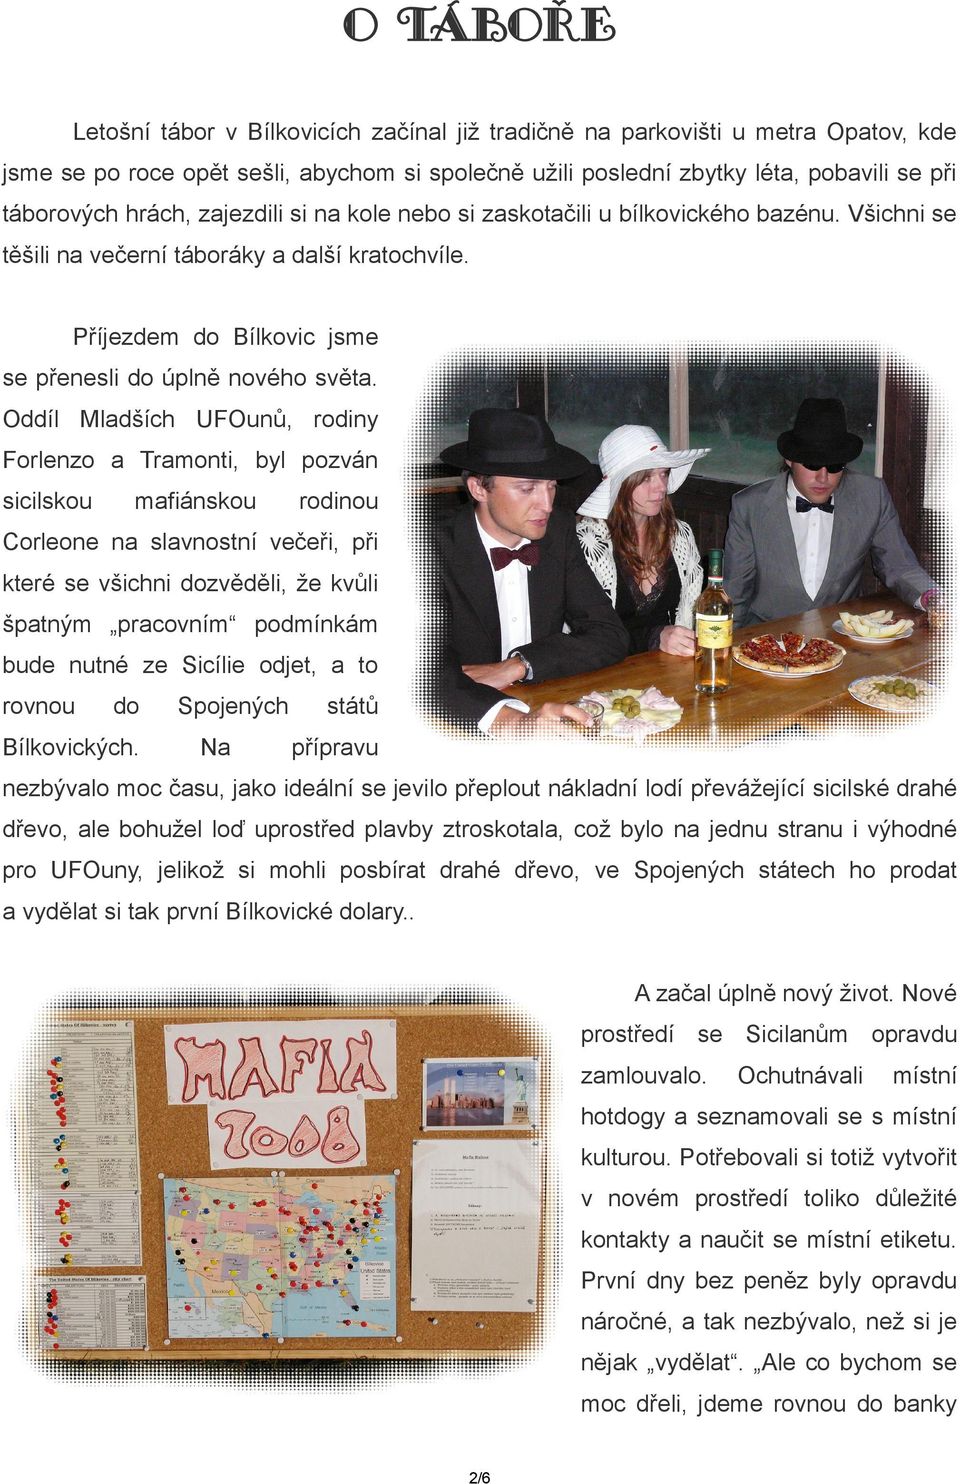 Oddíl Mladších UFOunů, rodiny Forlenzo a Tramonti, byl pozván sicilskou mafiánskou rodinou Corleone na slavnostní večeři, při které se všichni dozvěděli, že kvůli špatným pracovním podmínkám bude